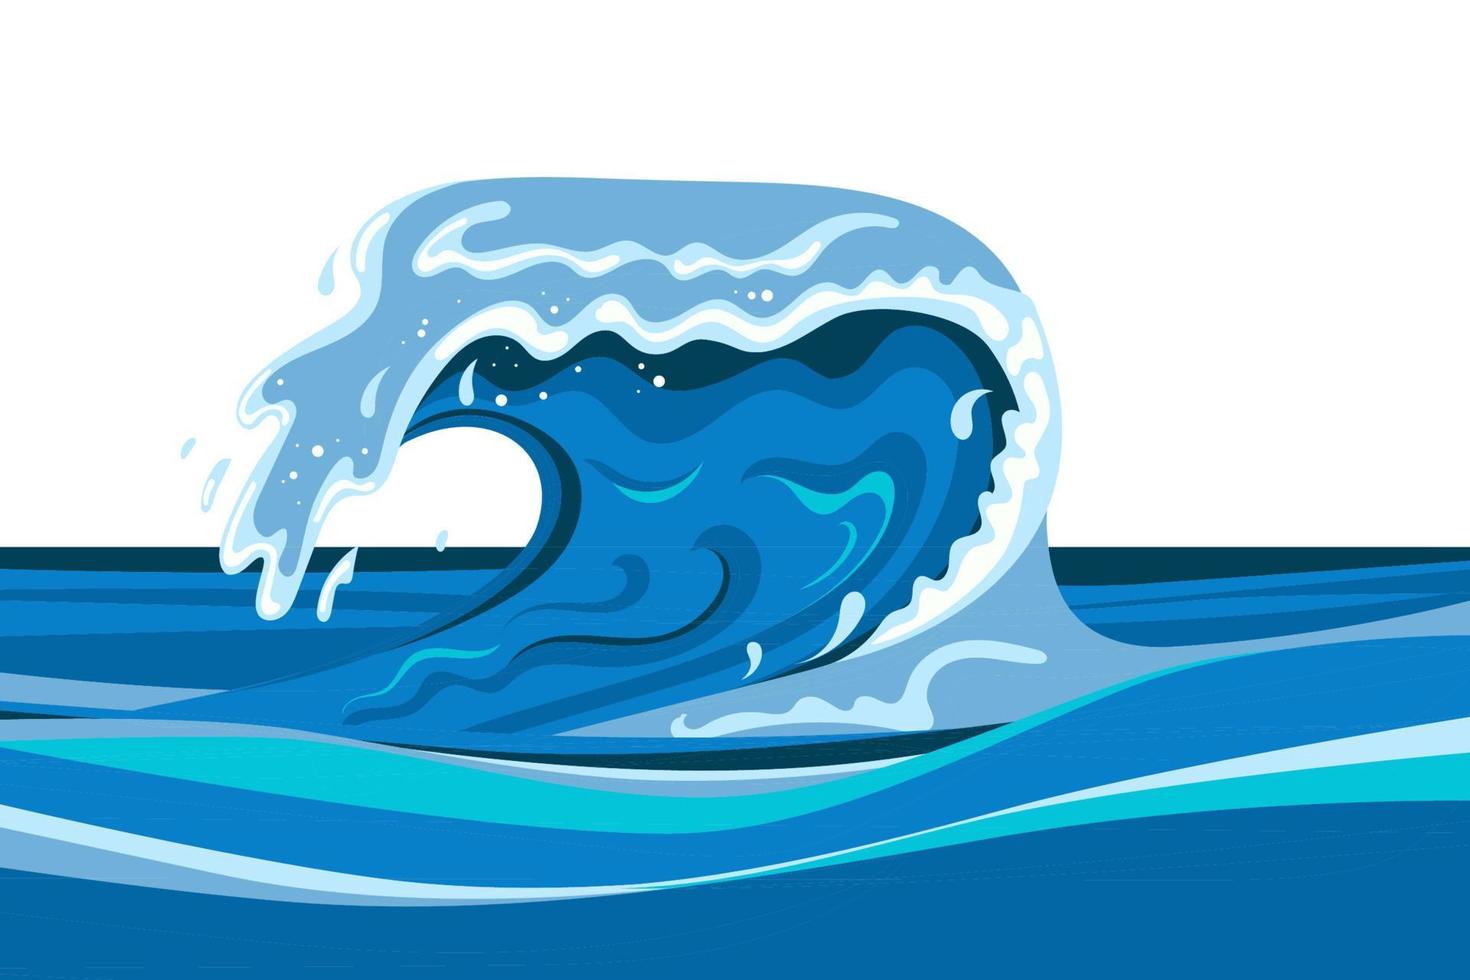 Tsumani-Welle im flachen Cartoon-Stil. großes blaues tropisches wasserspritzen mit weißem schaum. vektorillustration lokalisiert im weißen hintergrund vektor